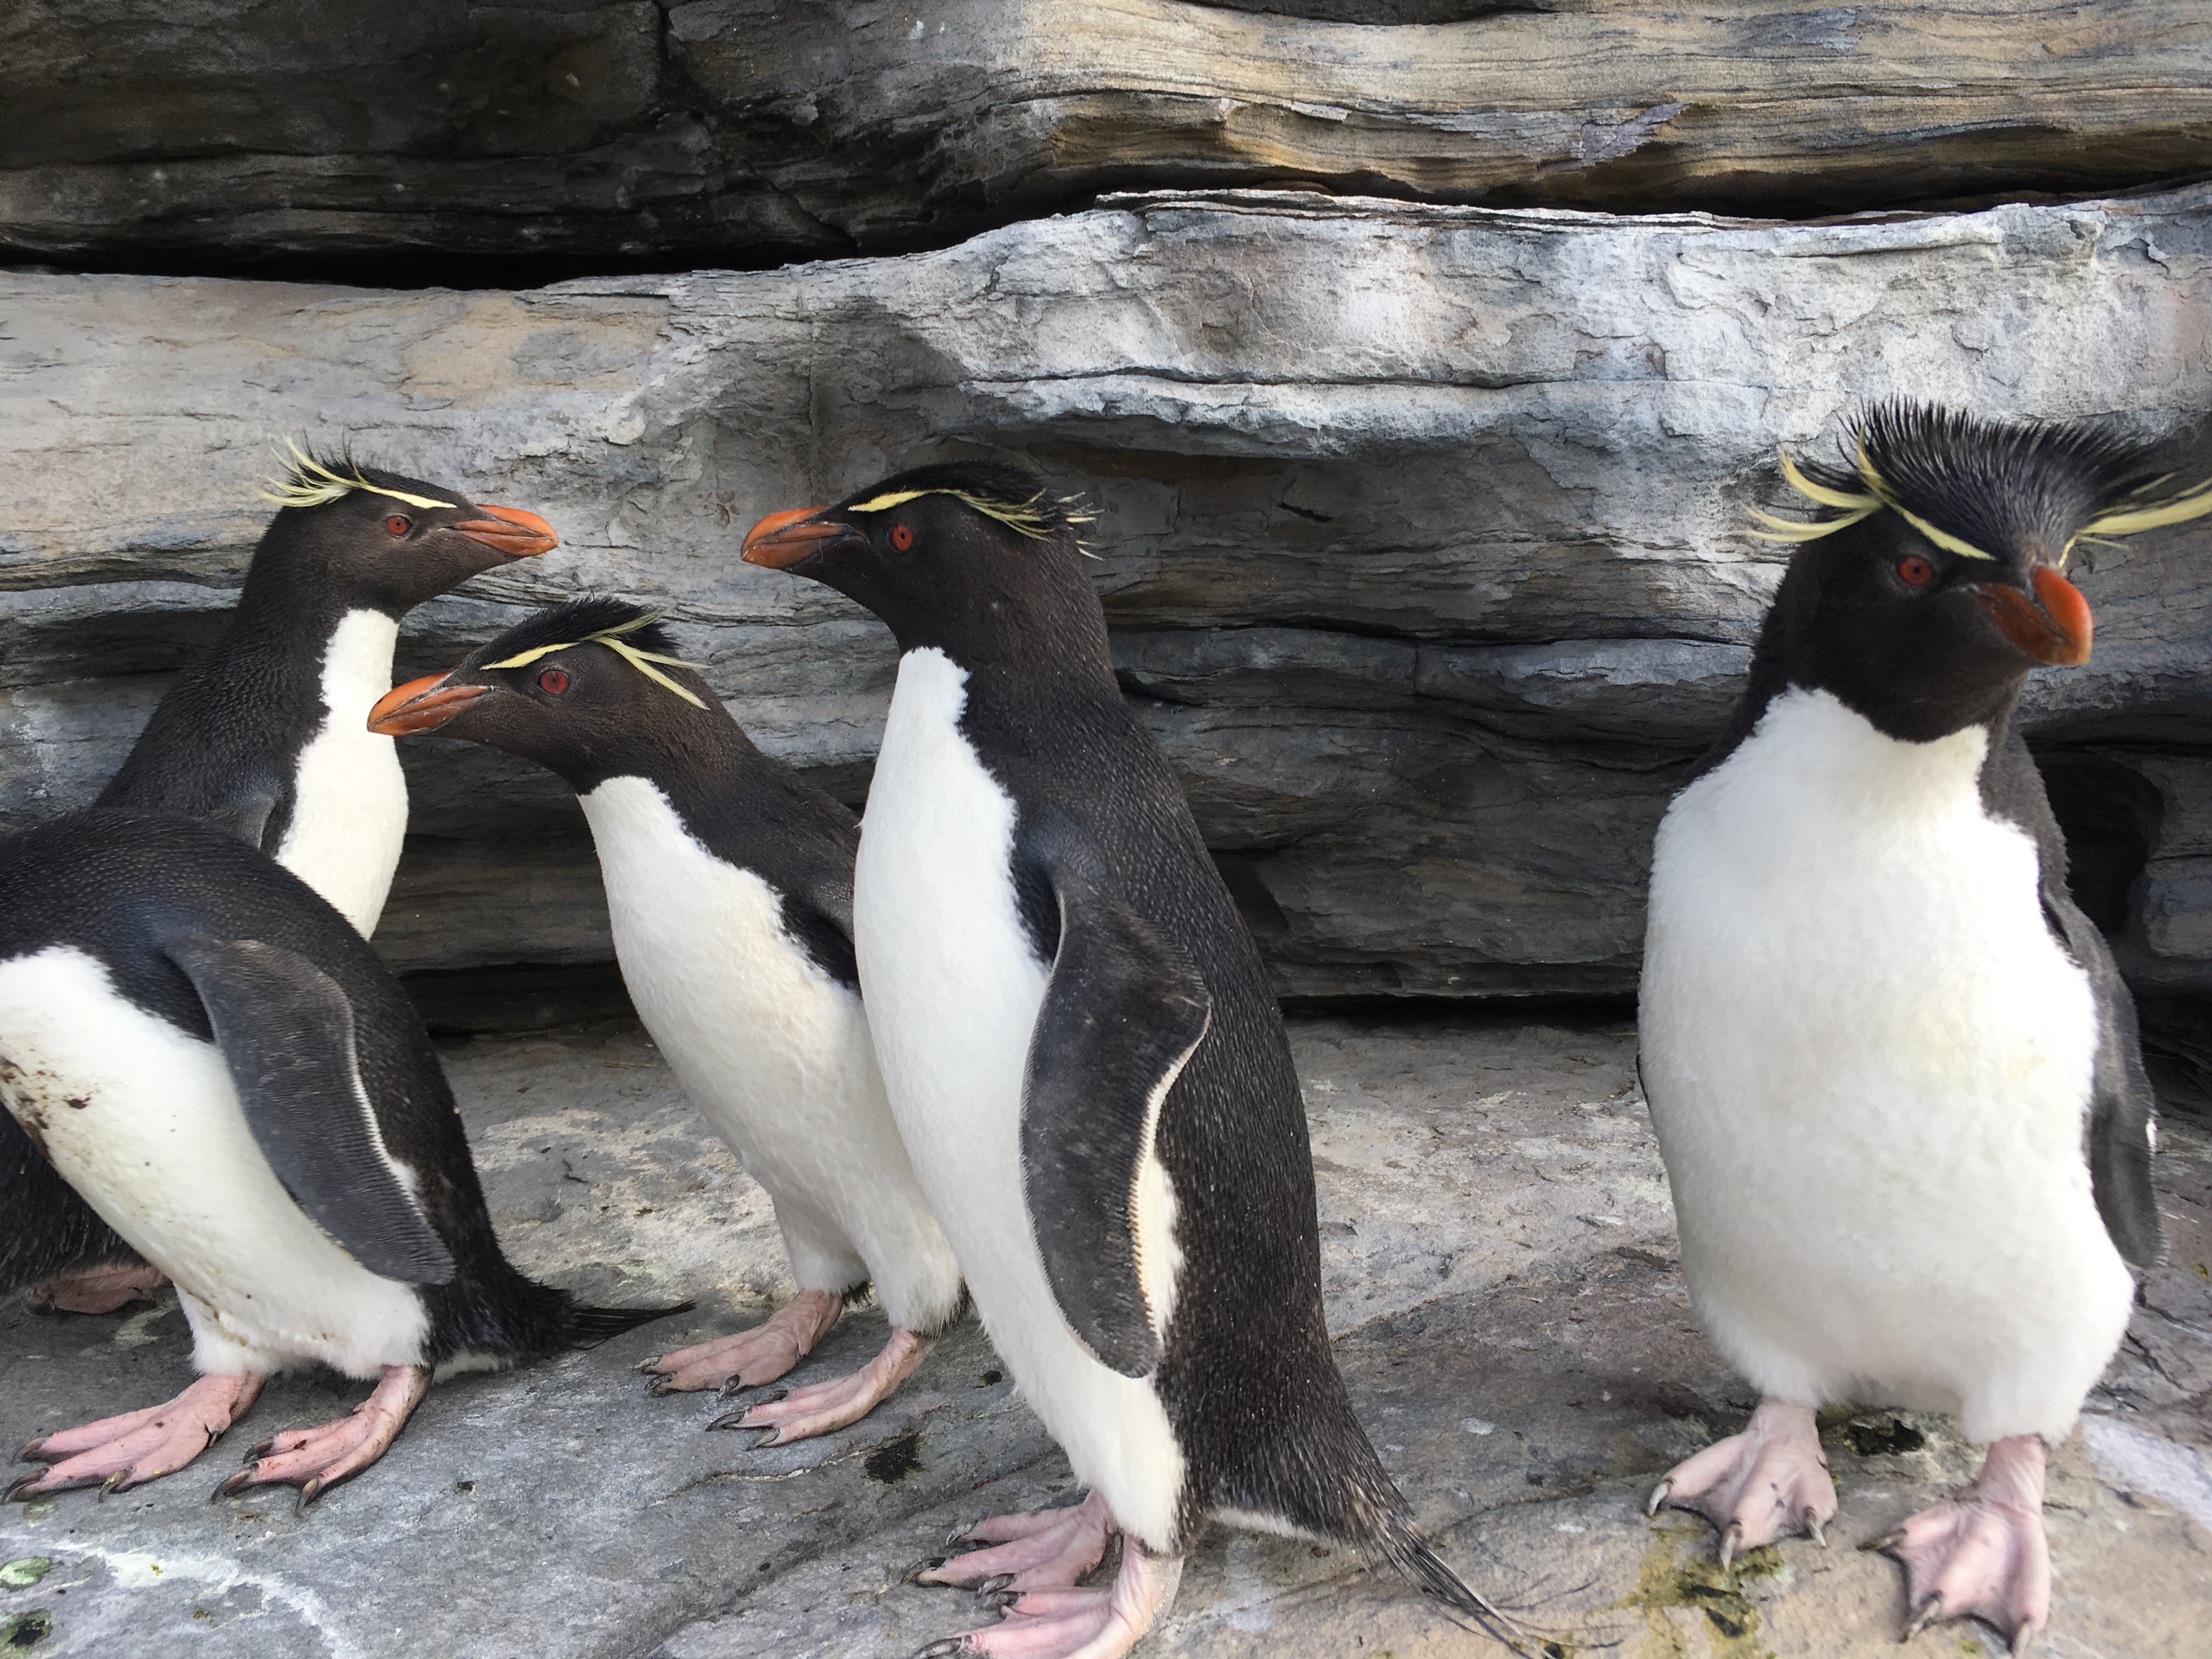 Walk amongst penguins in ground-breaking VR video for BirdLife